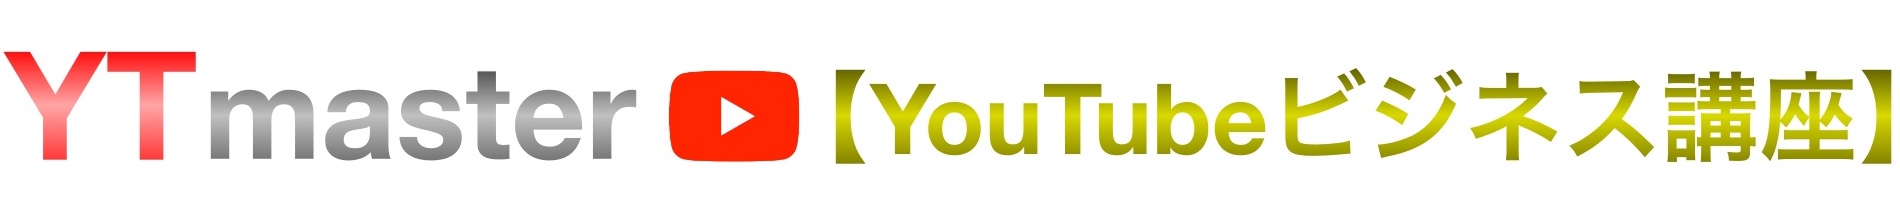 Youtubeライブ配信のやり方や限定公開で生放送する方法 Ytmaster Youtubeビジネス講座